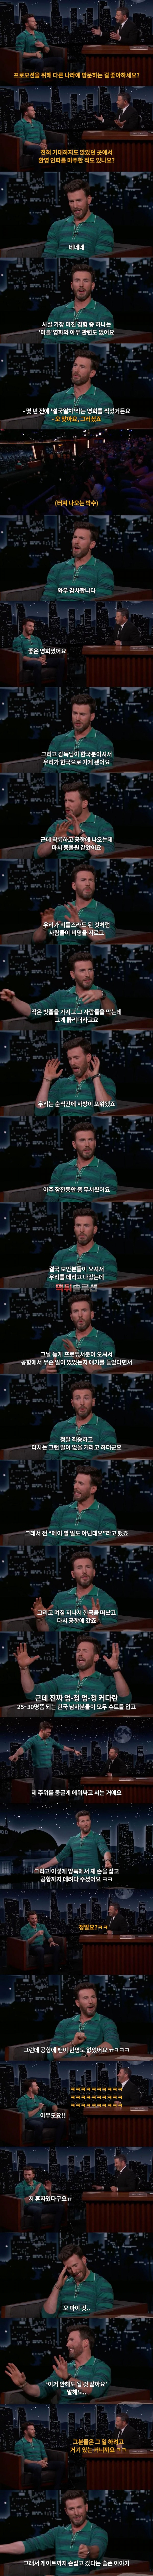 크리스 에반스가 푼 한국에서의 썰